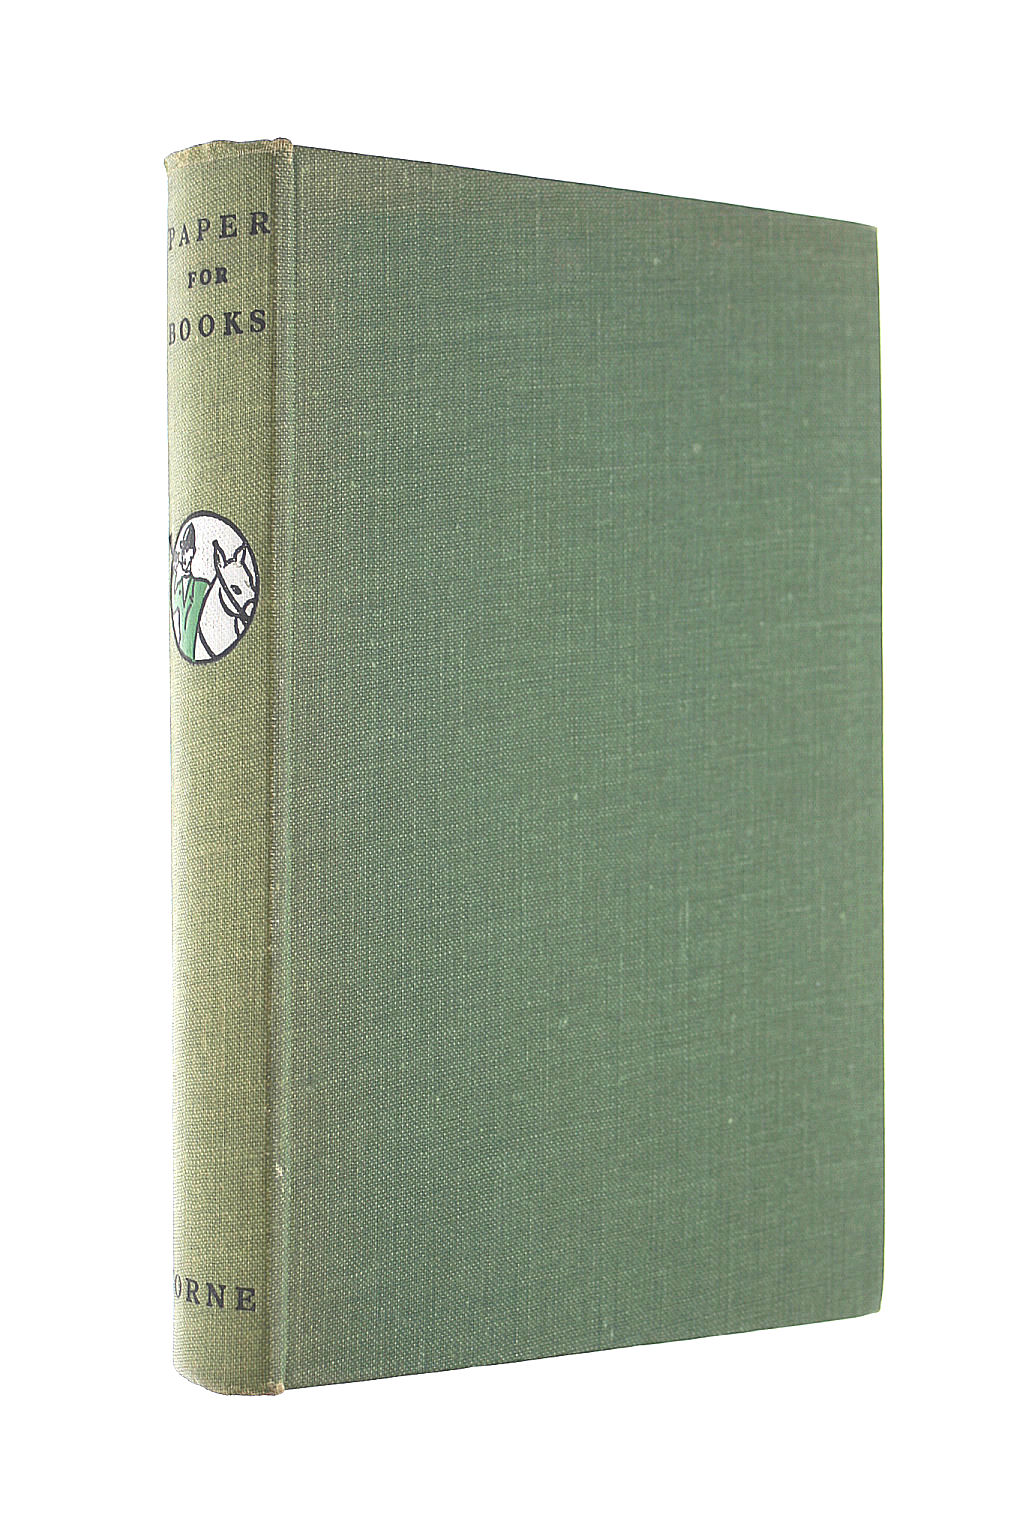 HORNE & CO. LTD., ROBERT - Paper for Books